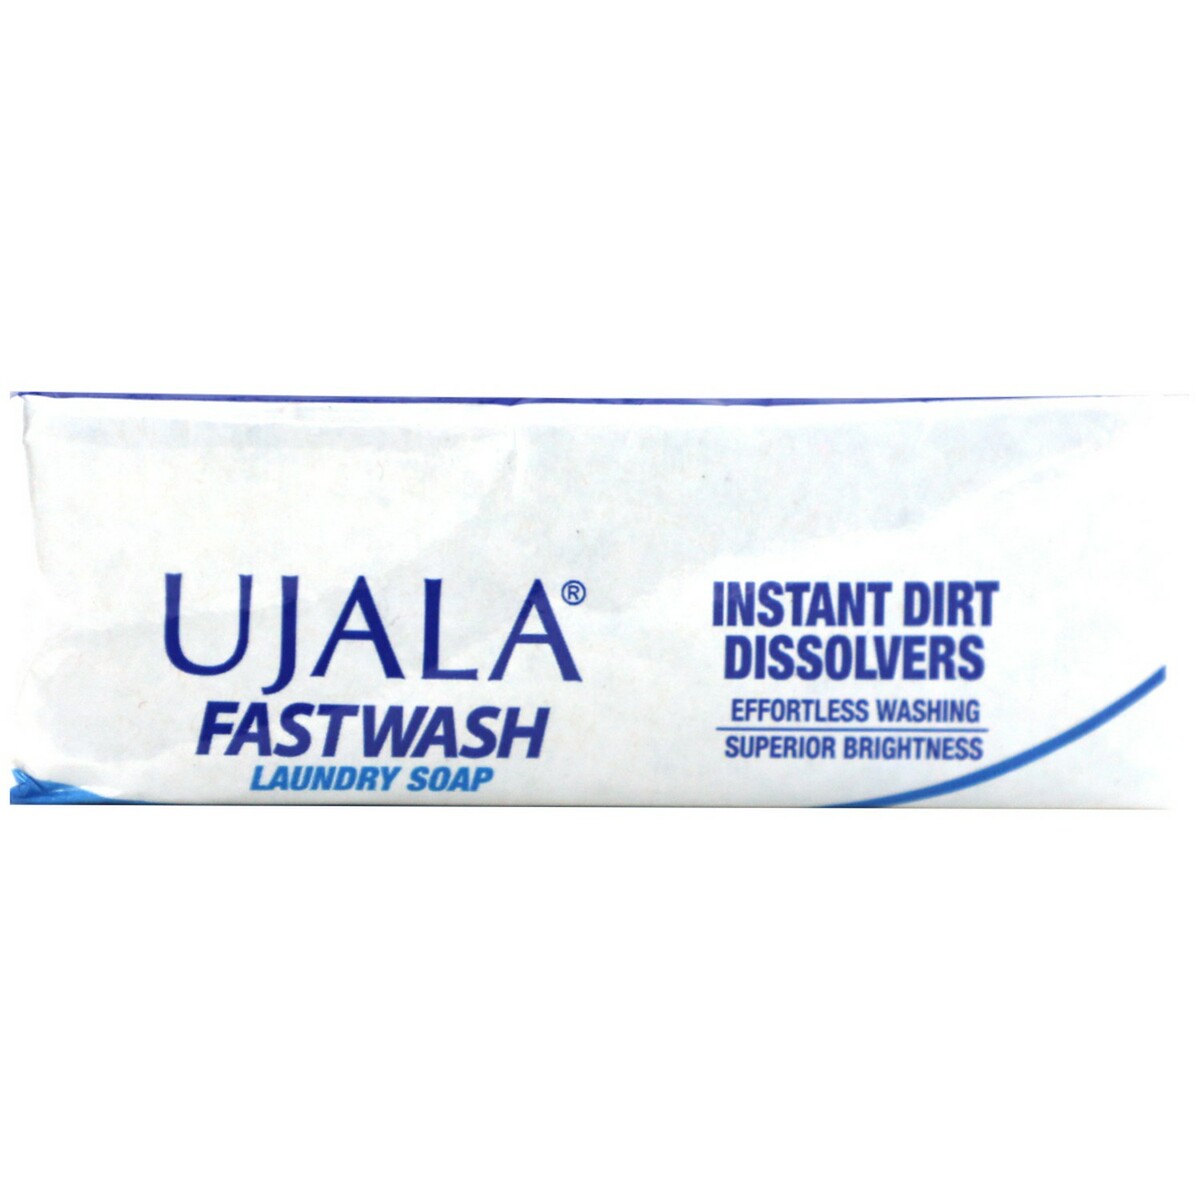 Ujala Fast Wash Laundry Soap 150g